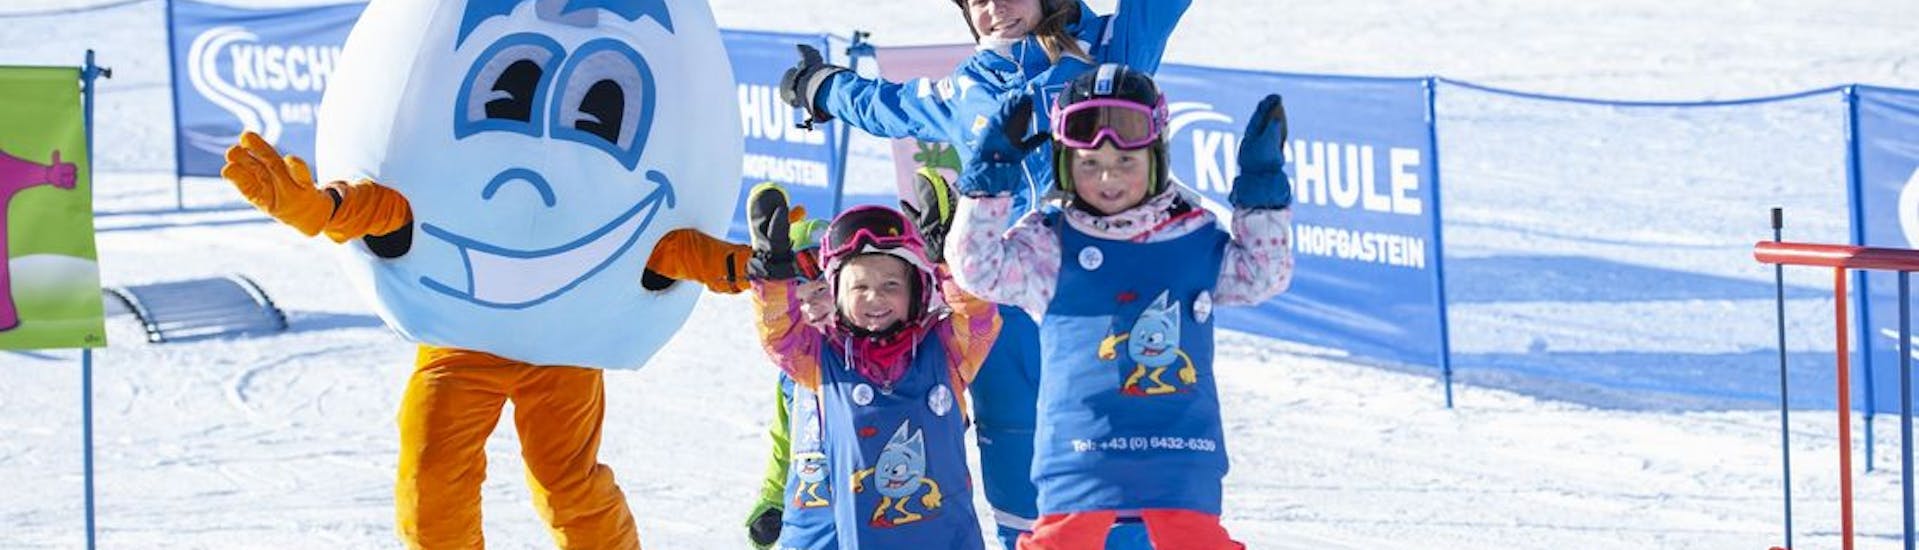 Kinder-Skikurs (6-11 Jahre) für Fortgeschritten mit Skischule Bad Hofgastein.